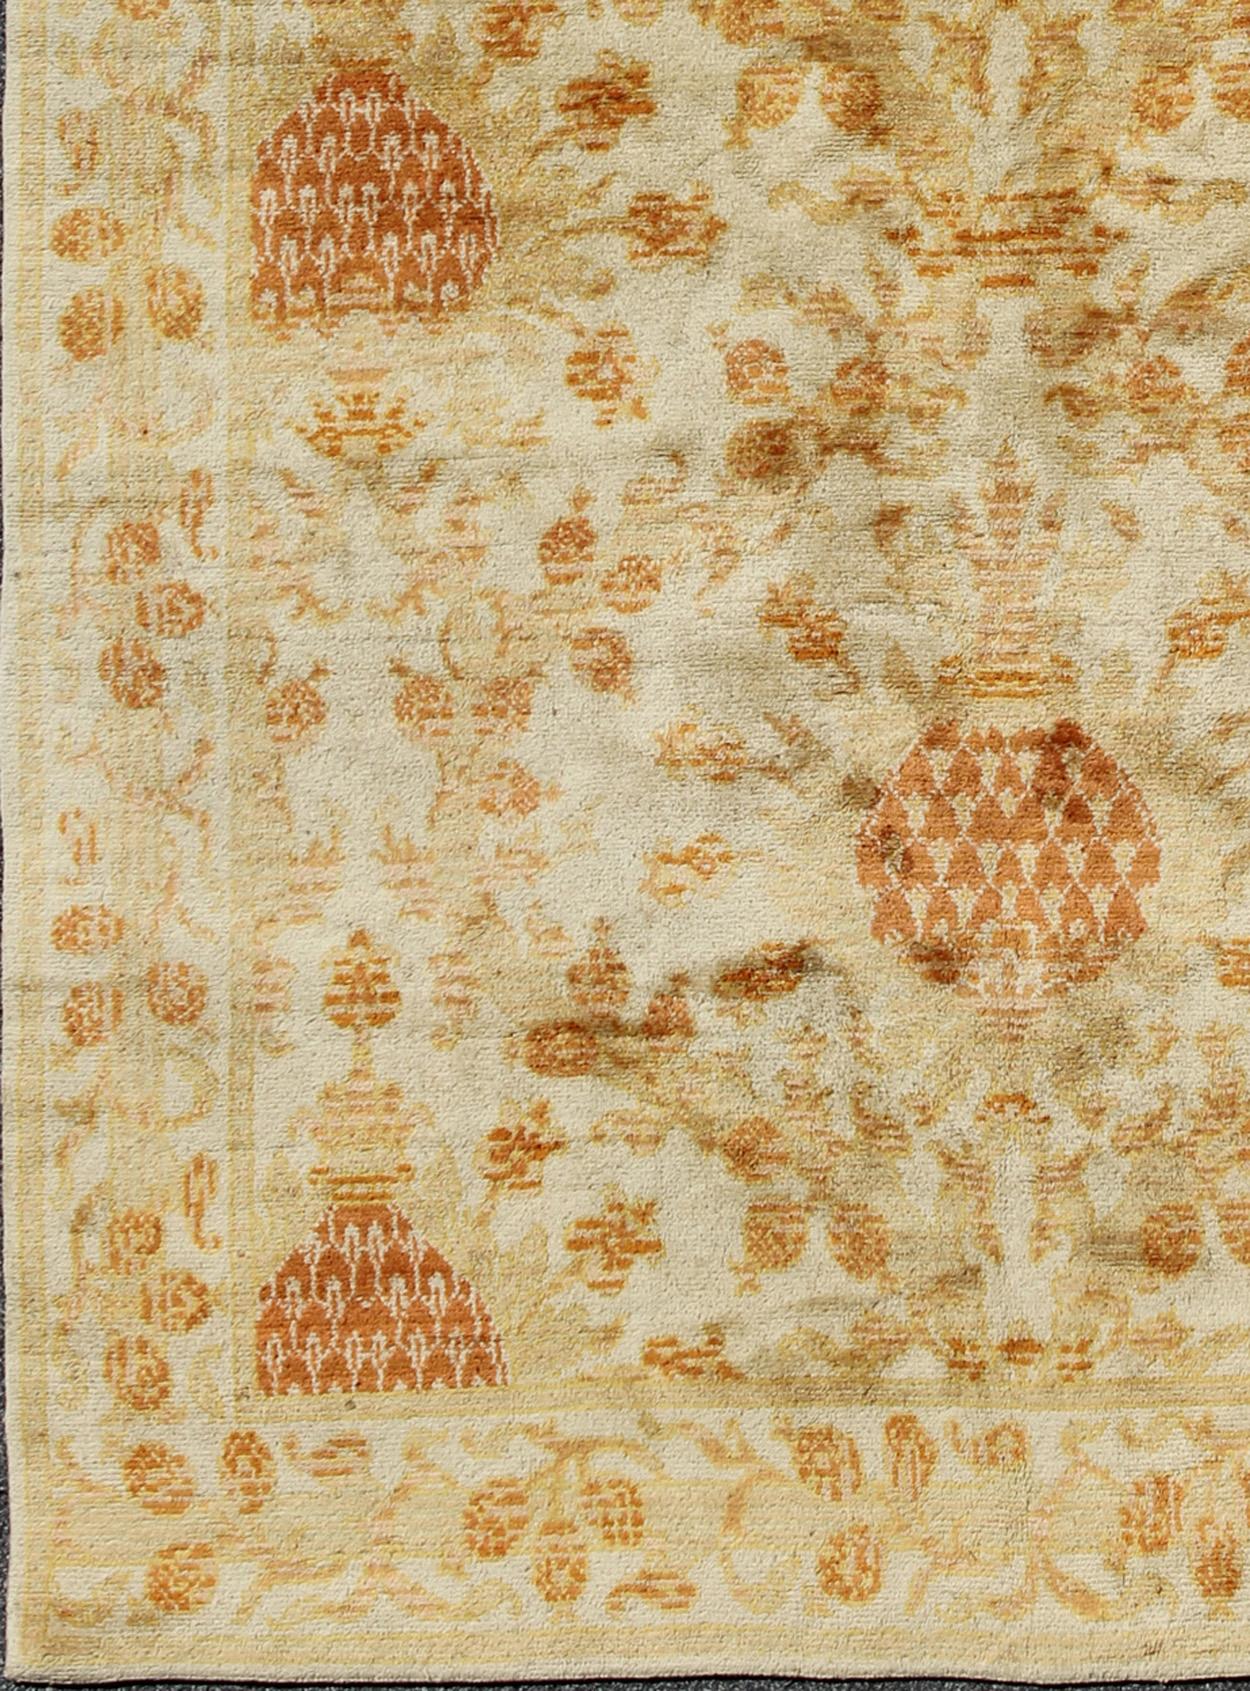 Antique Spanish European Carpet with Pineapple Design in Gold, Cream & Tangerine For Sale 1